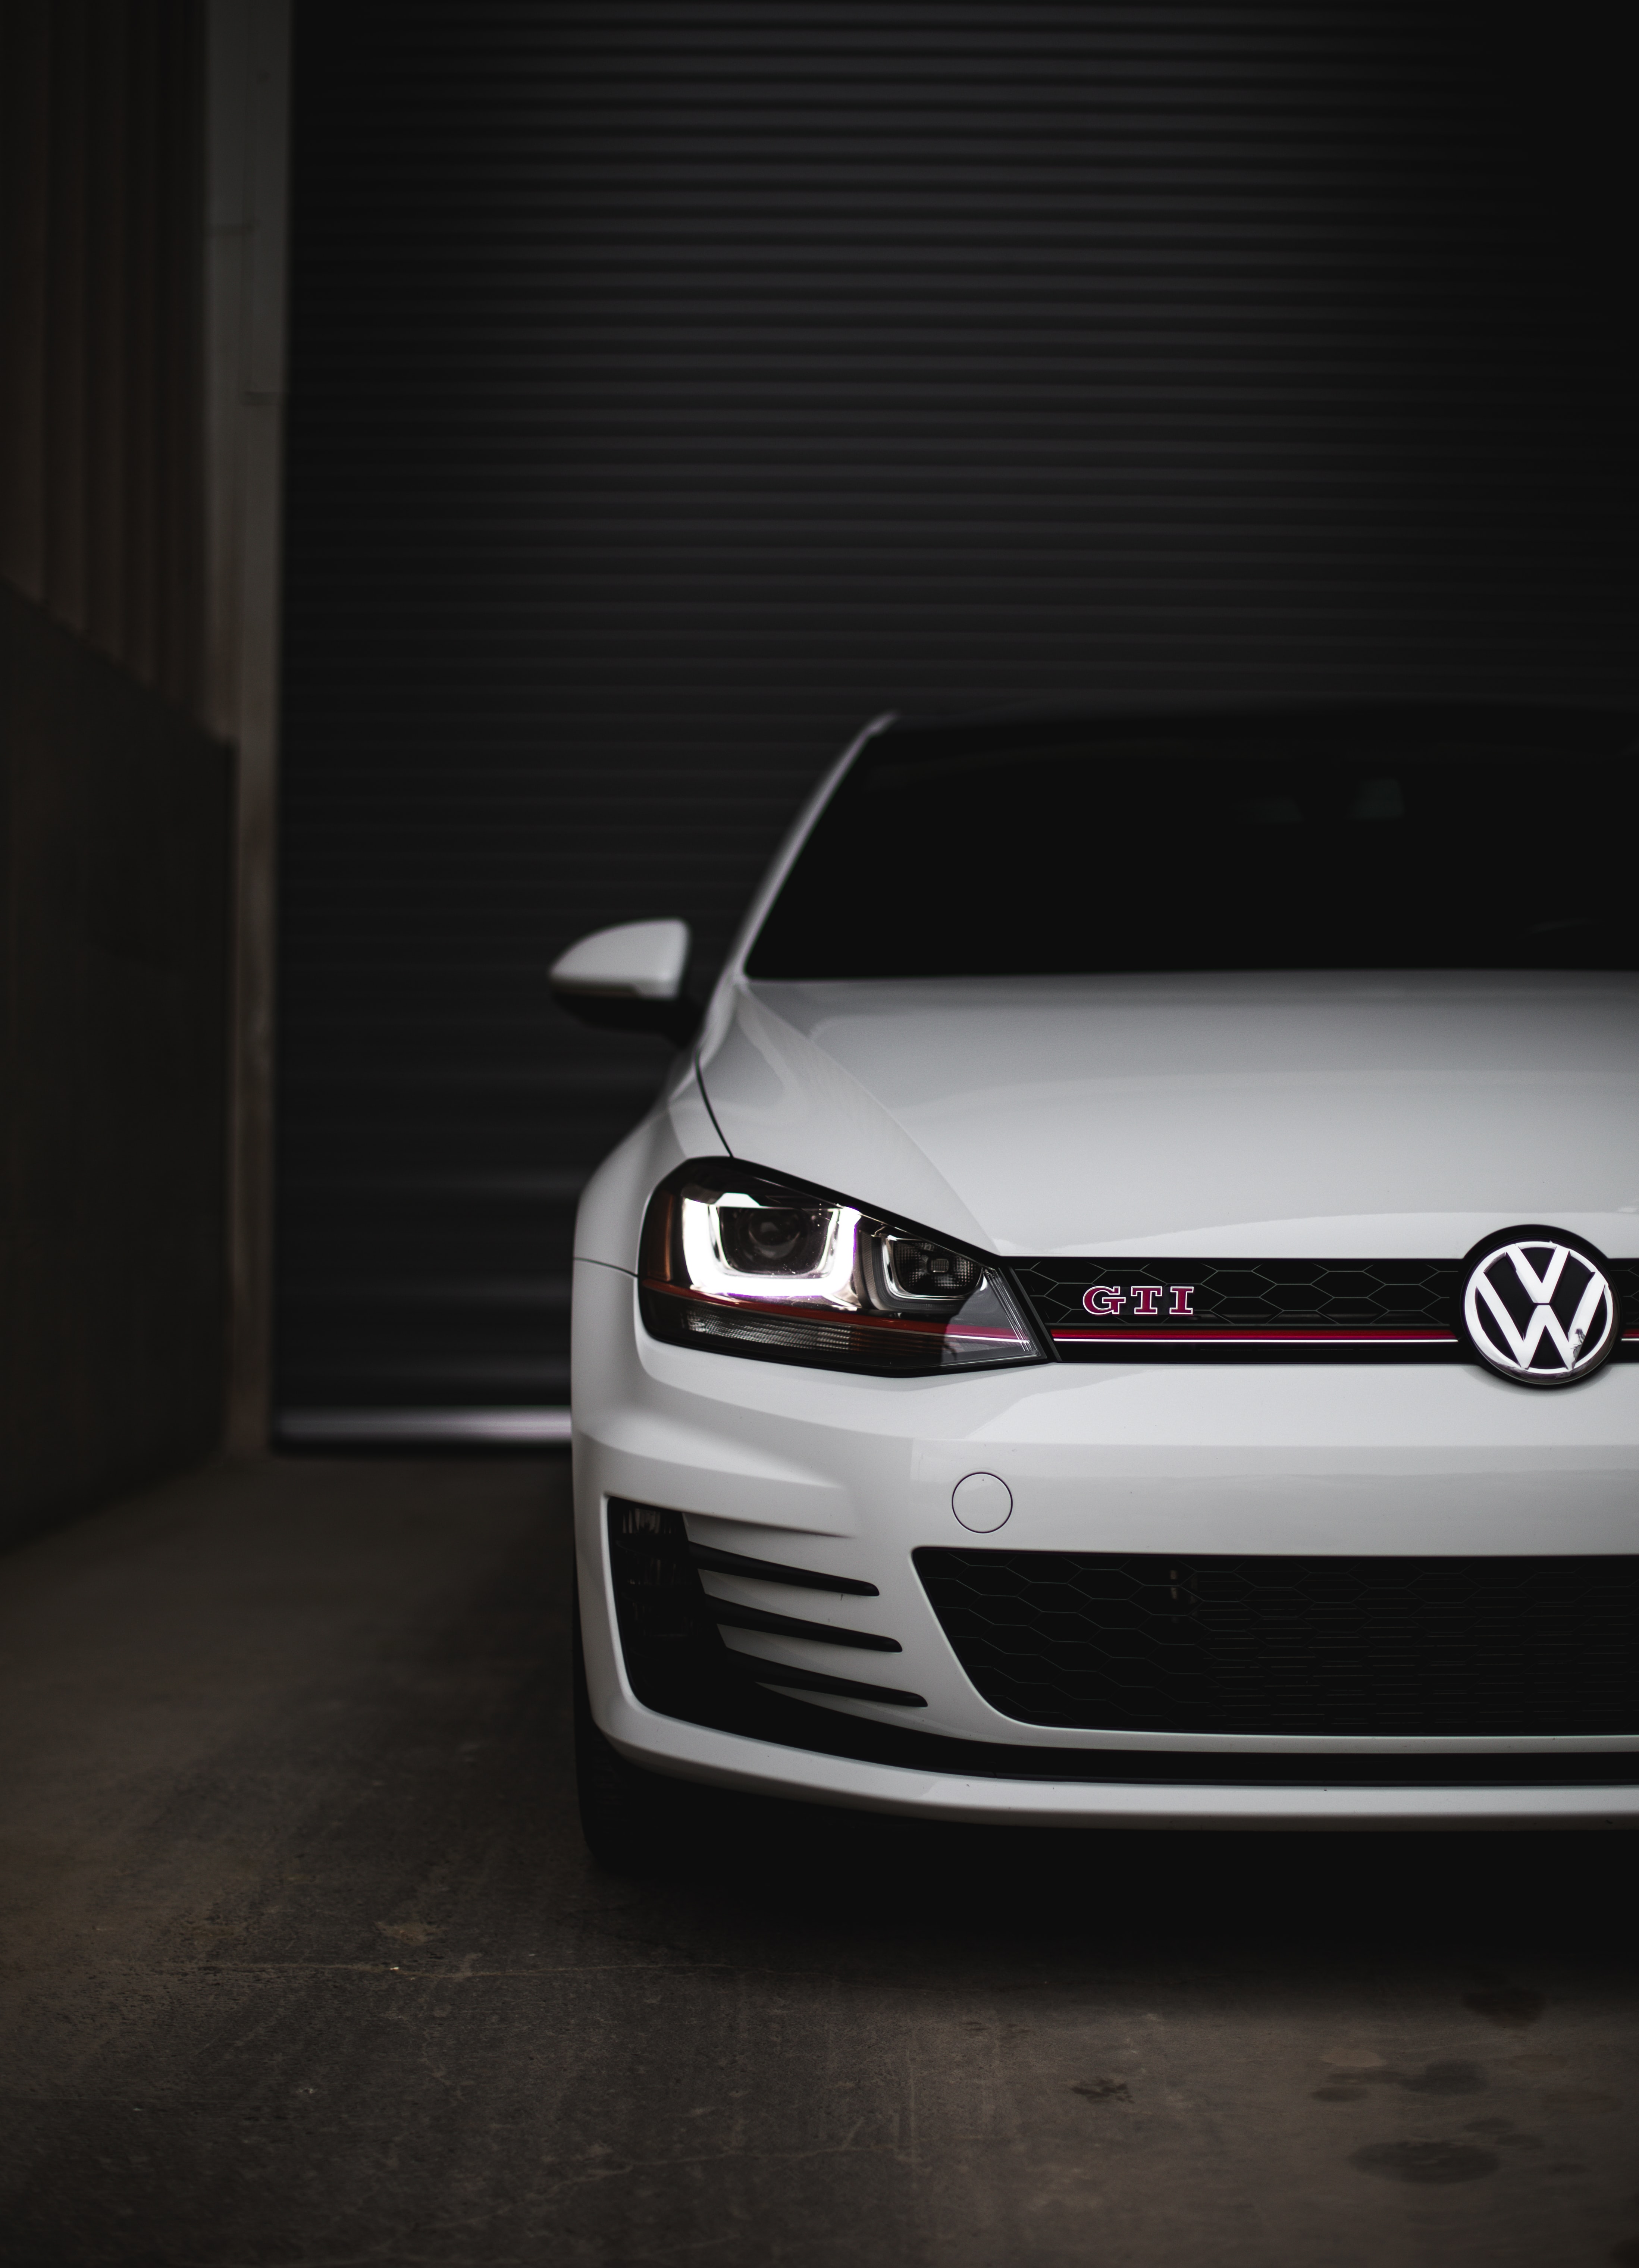 Descargar las imágenes de Volkswagen gratis para teléfonos Android y  iPhone, fondos de pantalla de Volkswagen para teléfonos móviles